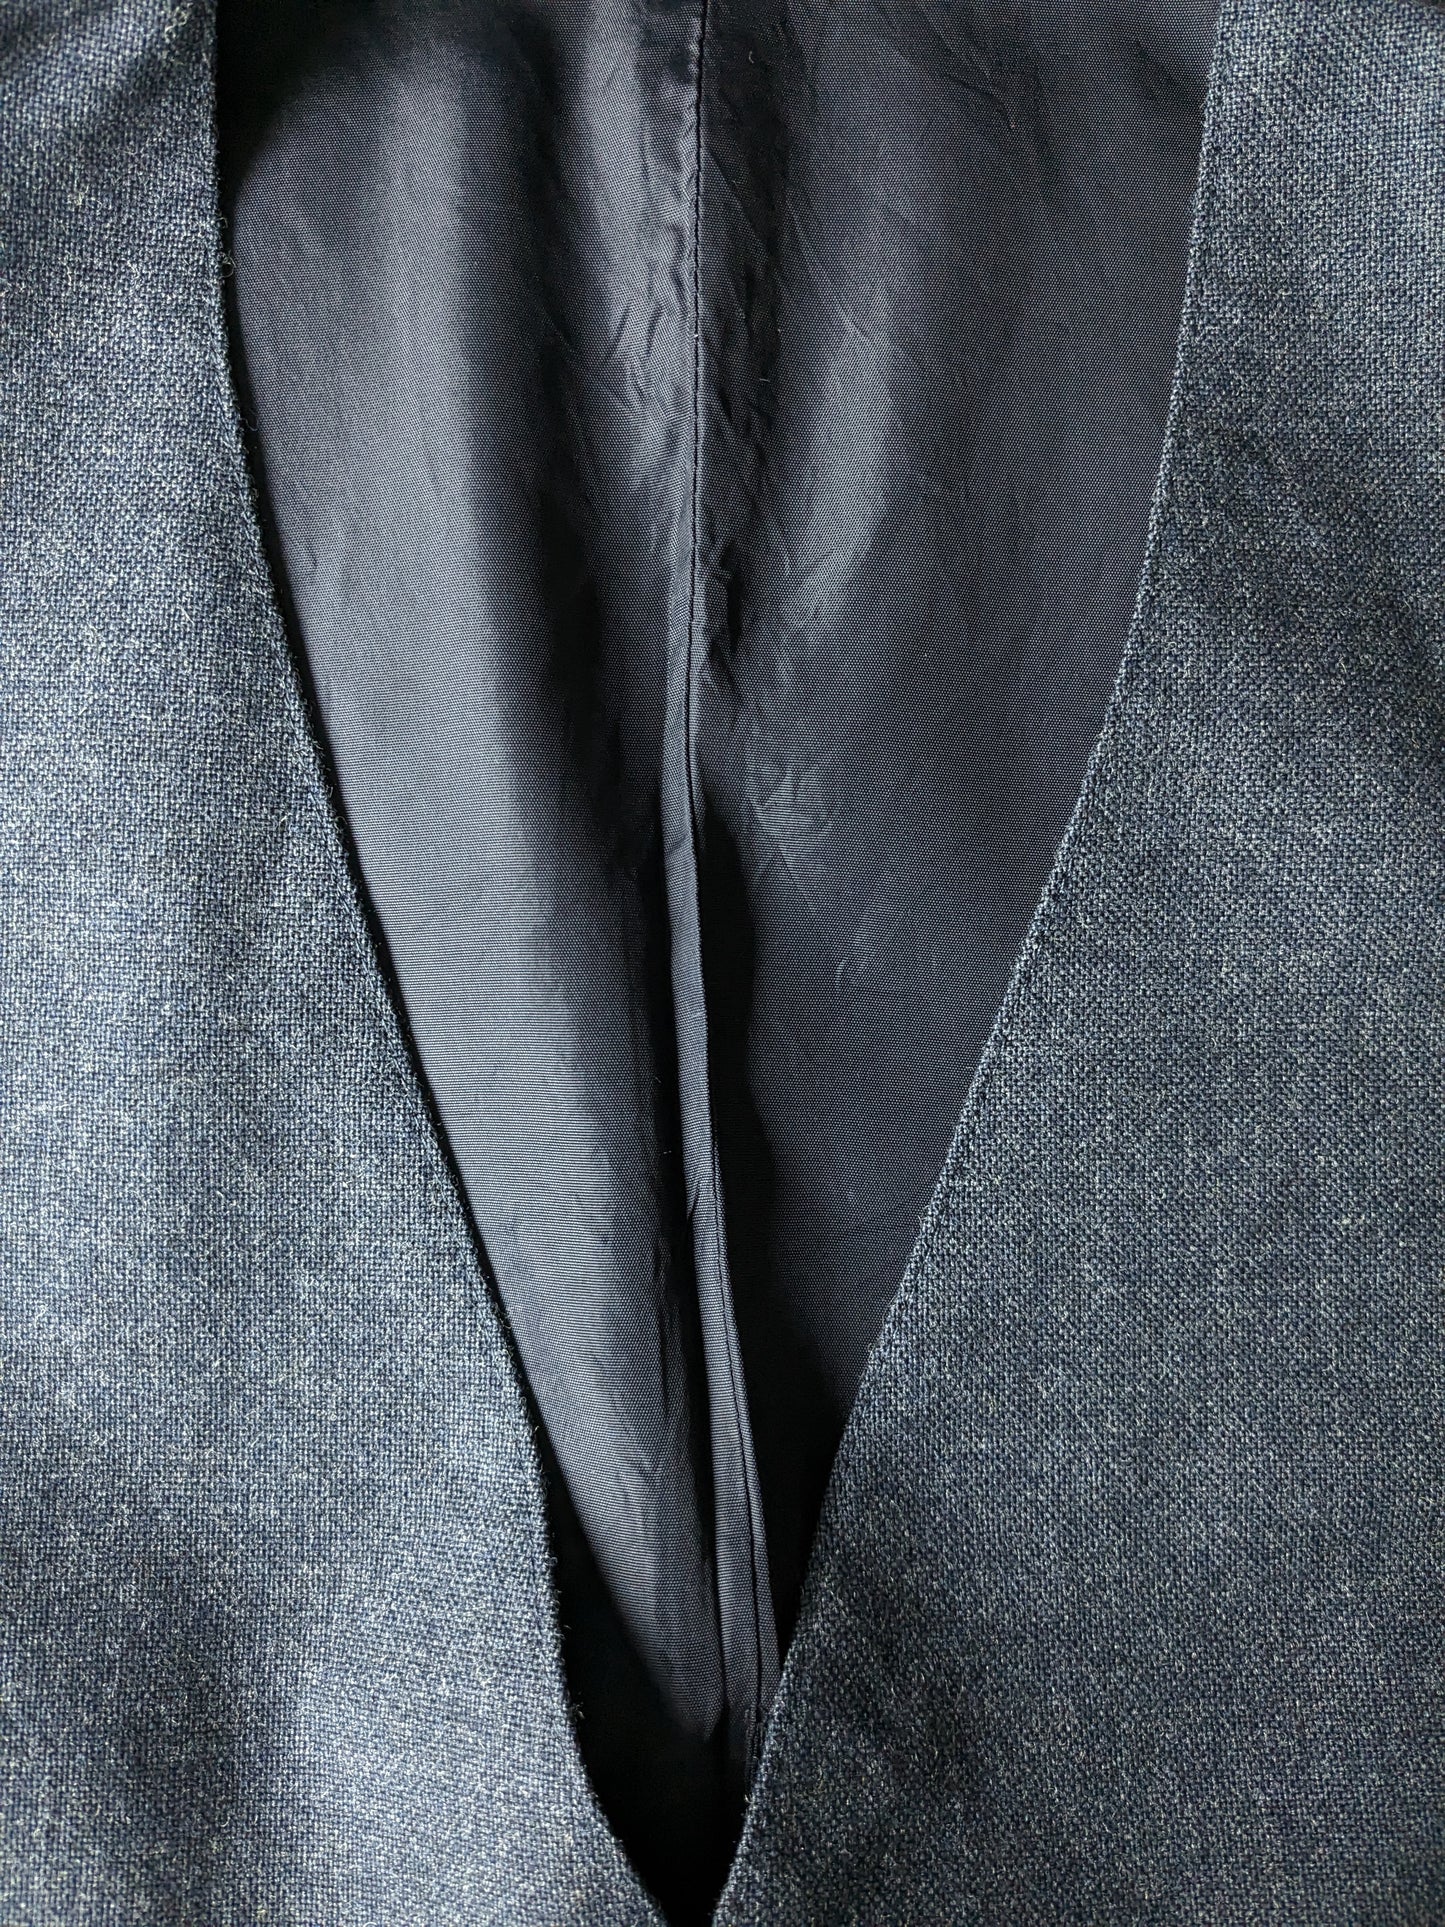 Waistcoat. Dark Gray Blue motif. Size 54 / L.